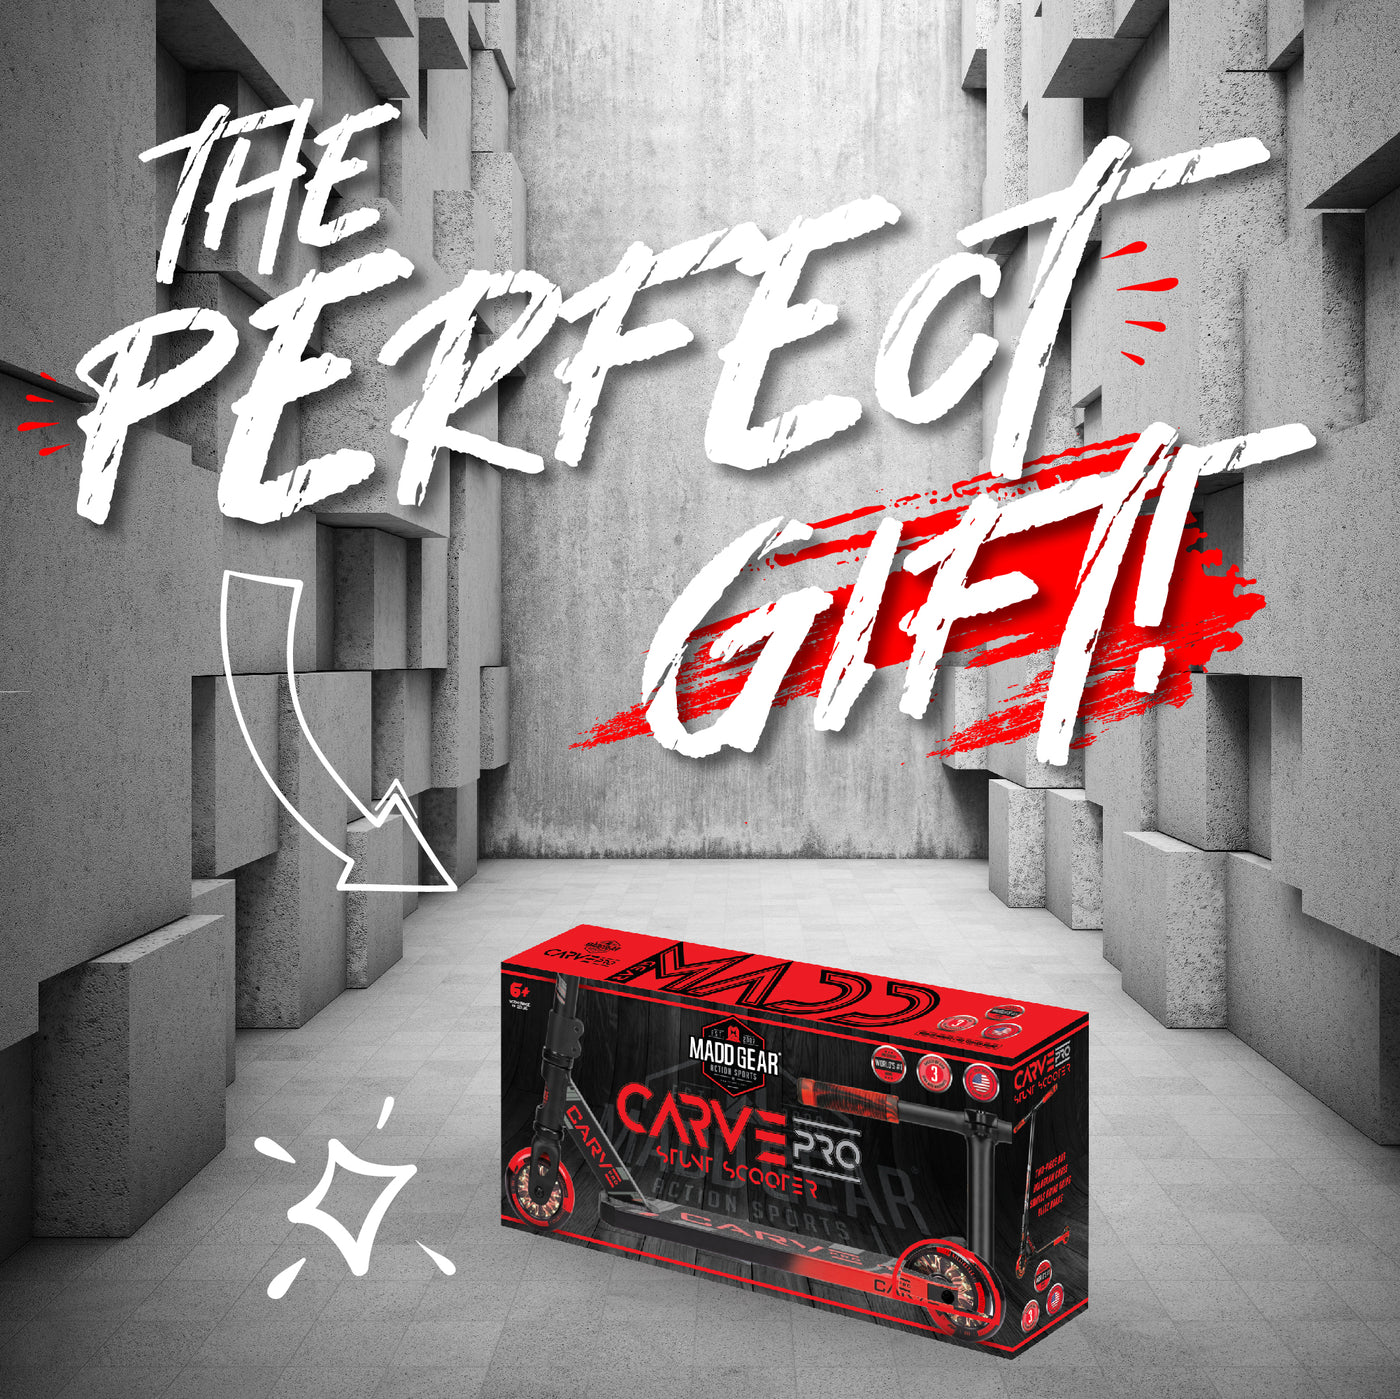 MGP Madd Gear Carve Pro Stunt Trick Kick Scooter Razor Red Black Perfect Gift